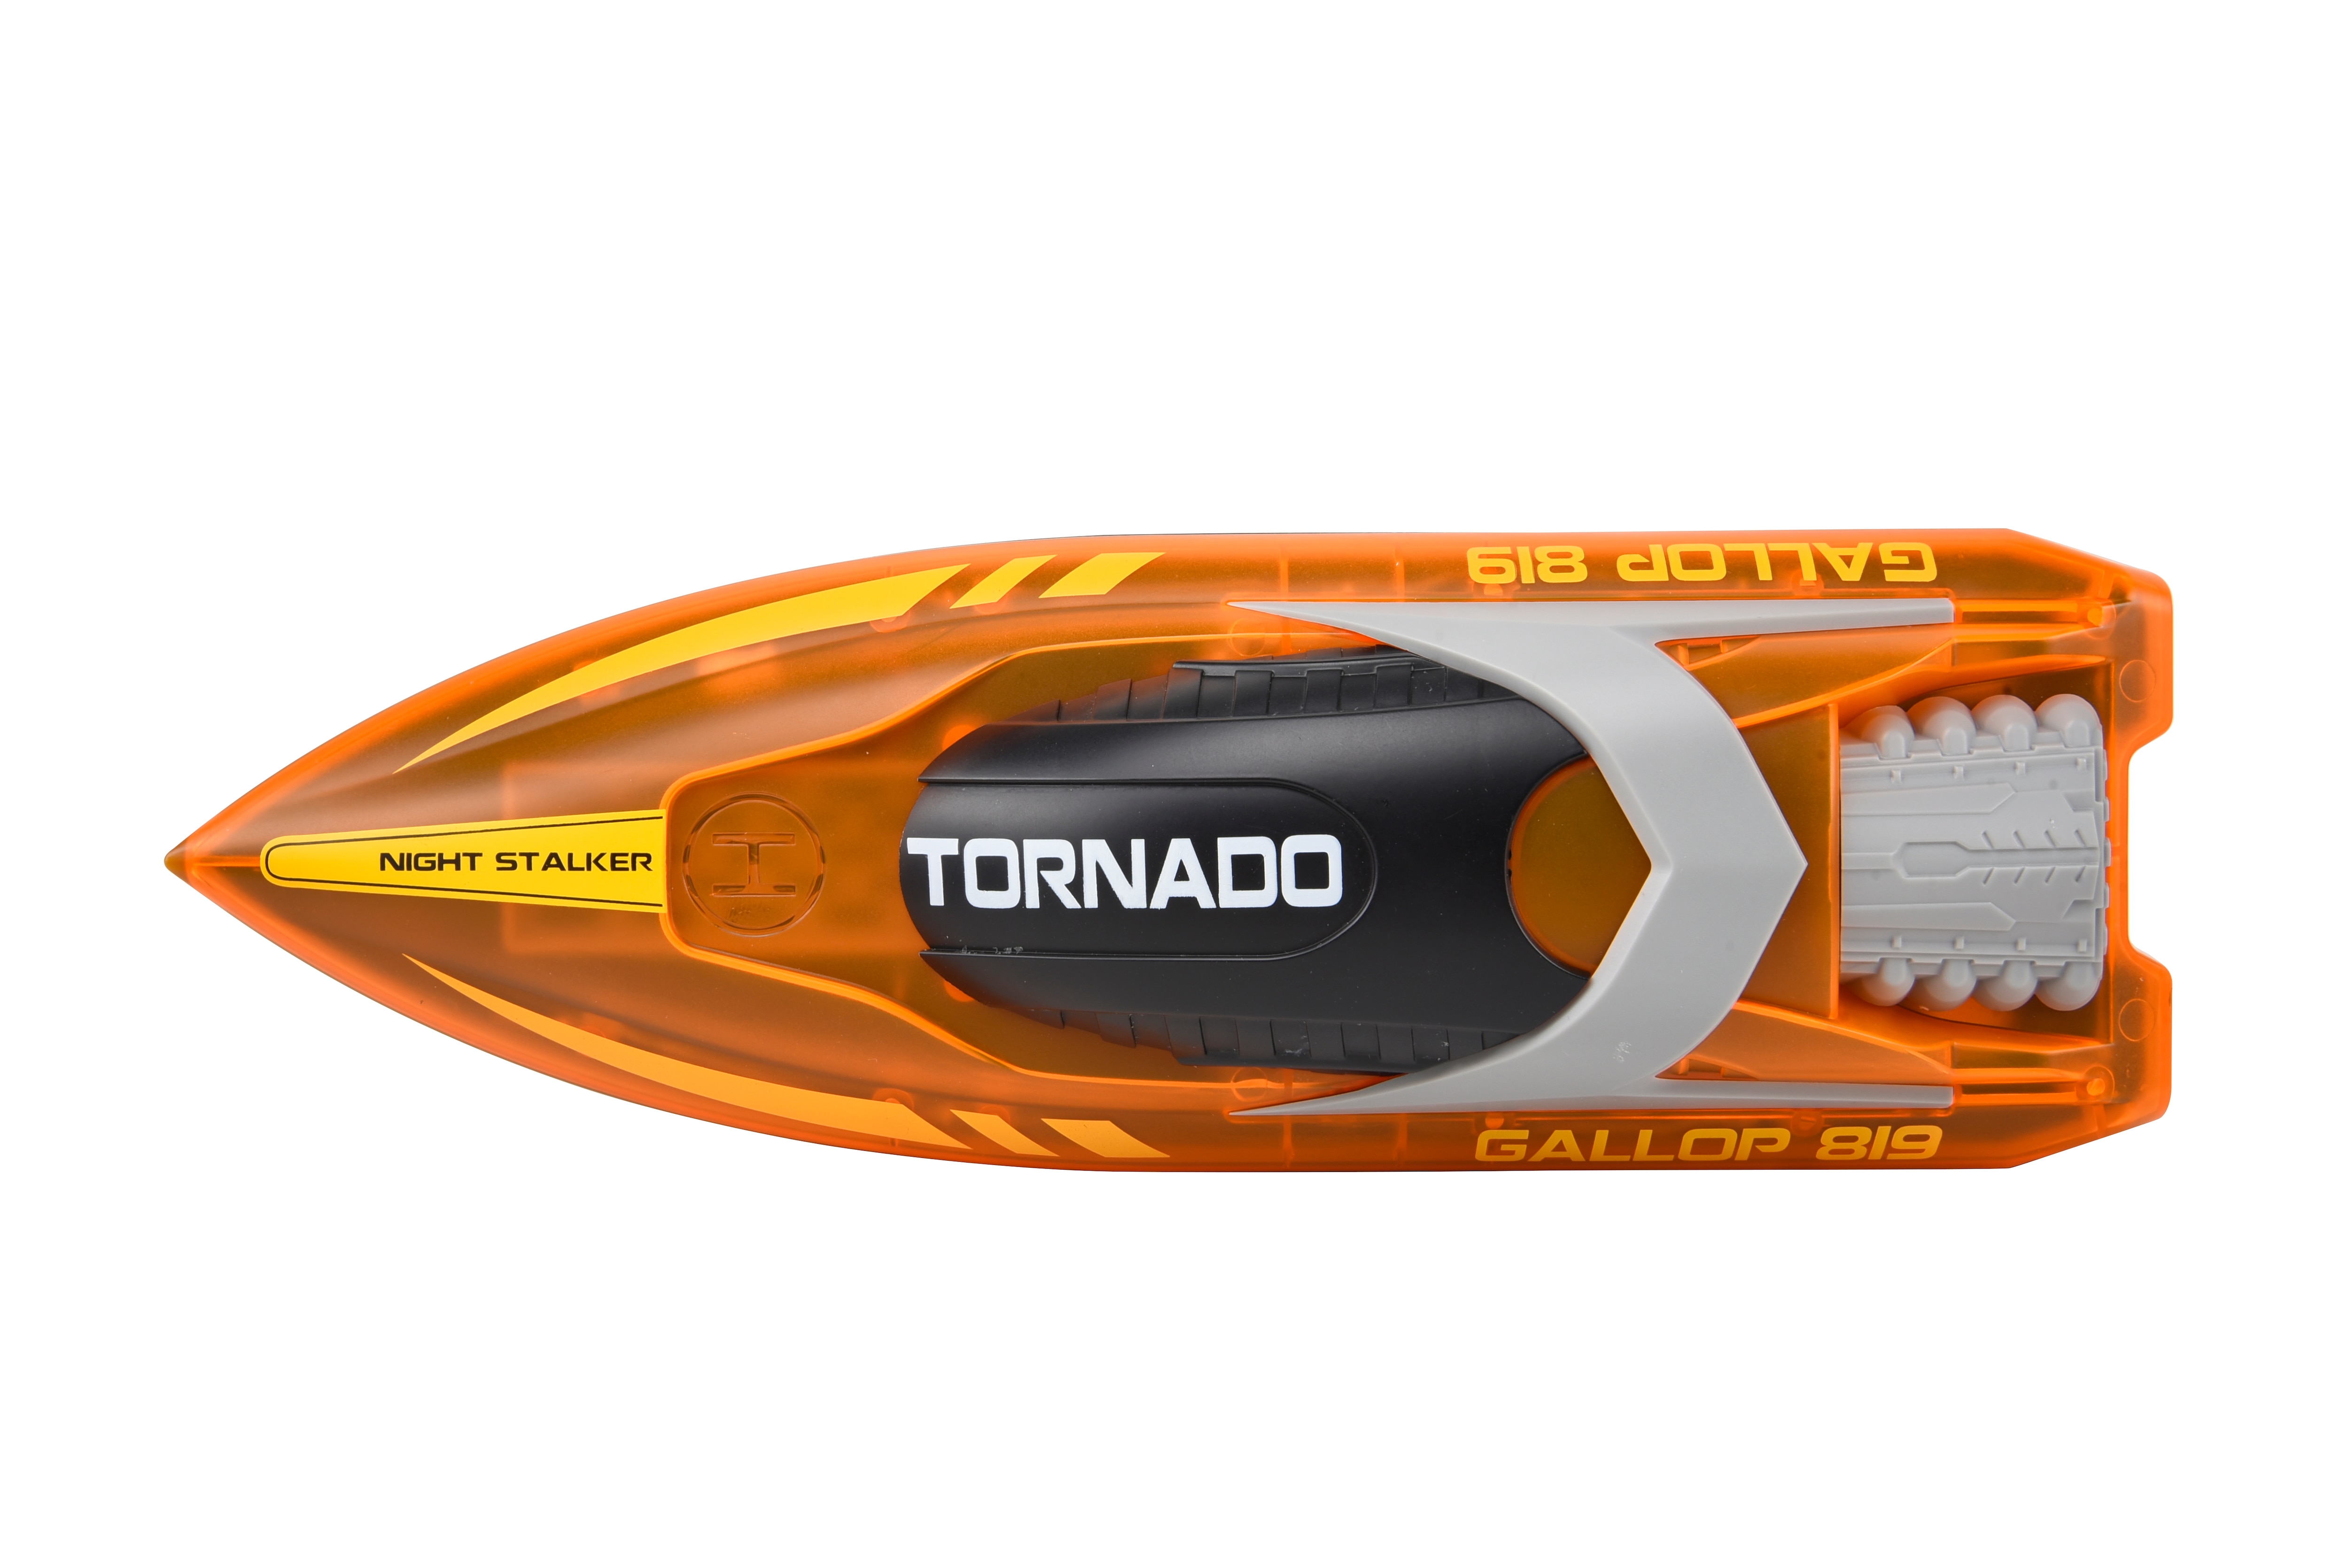 Radiostyrd Tornado racingbåt